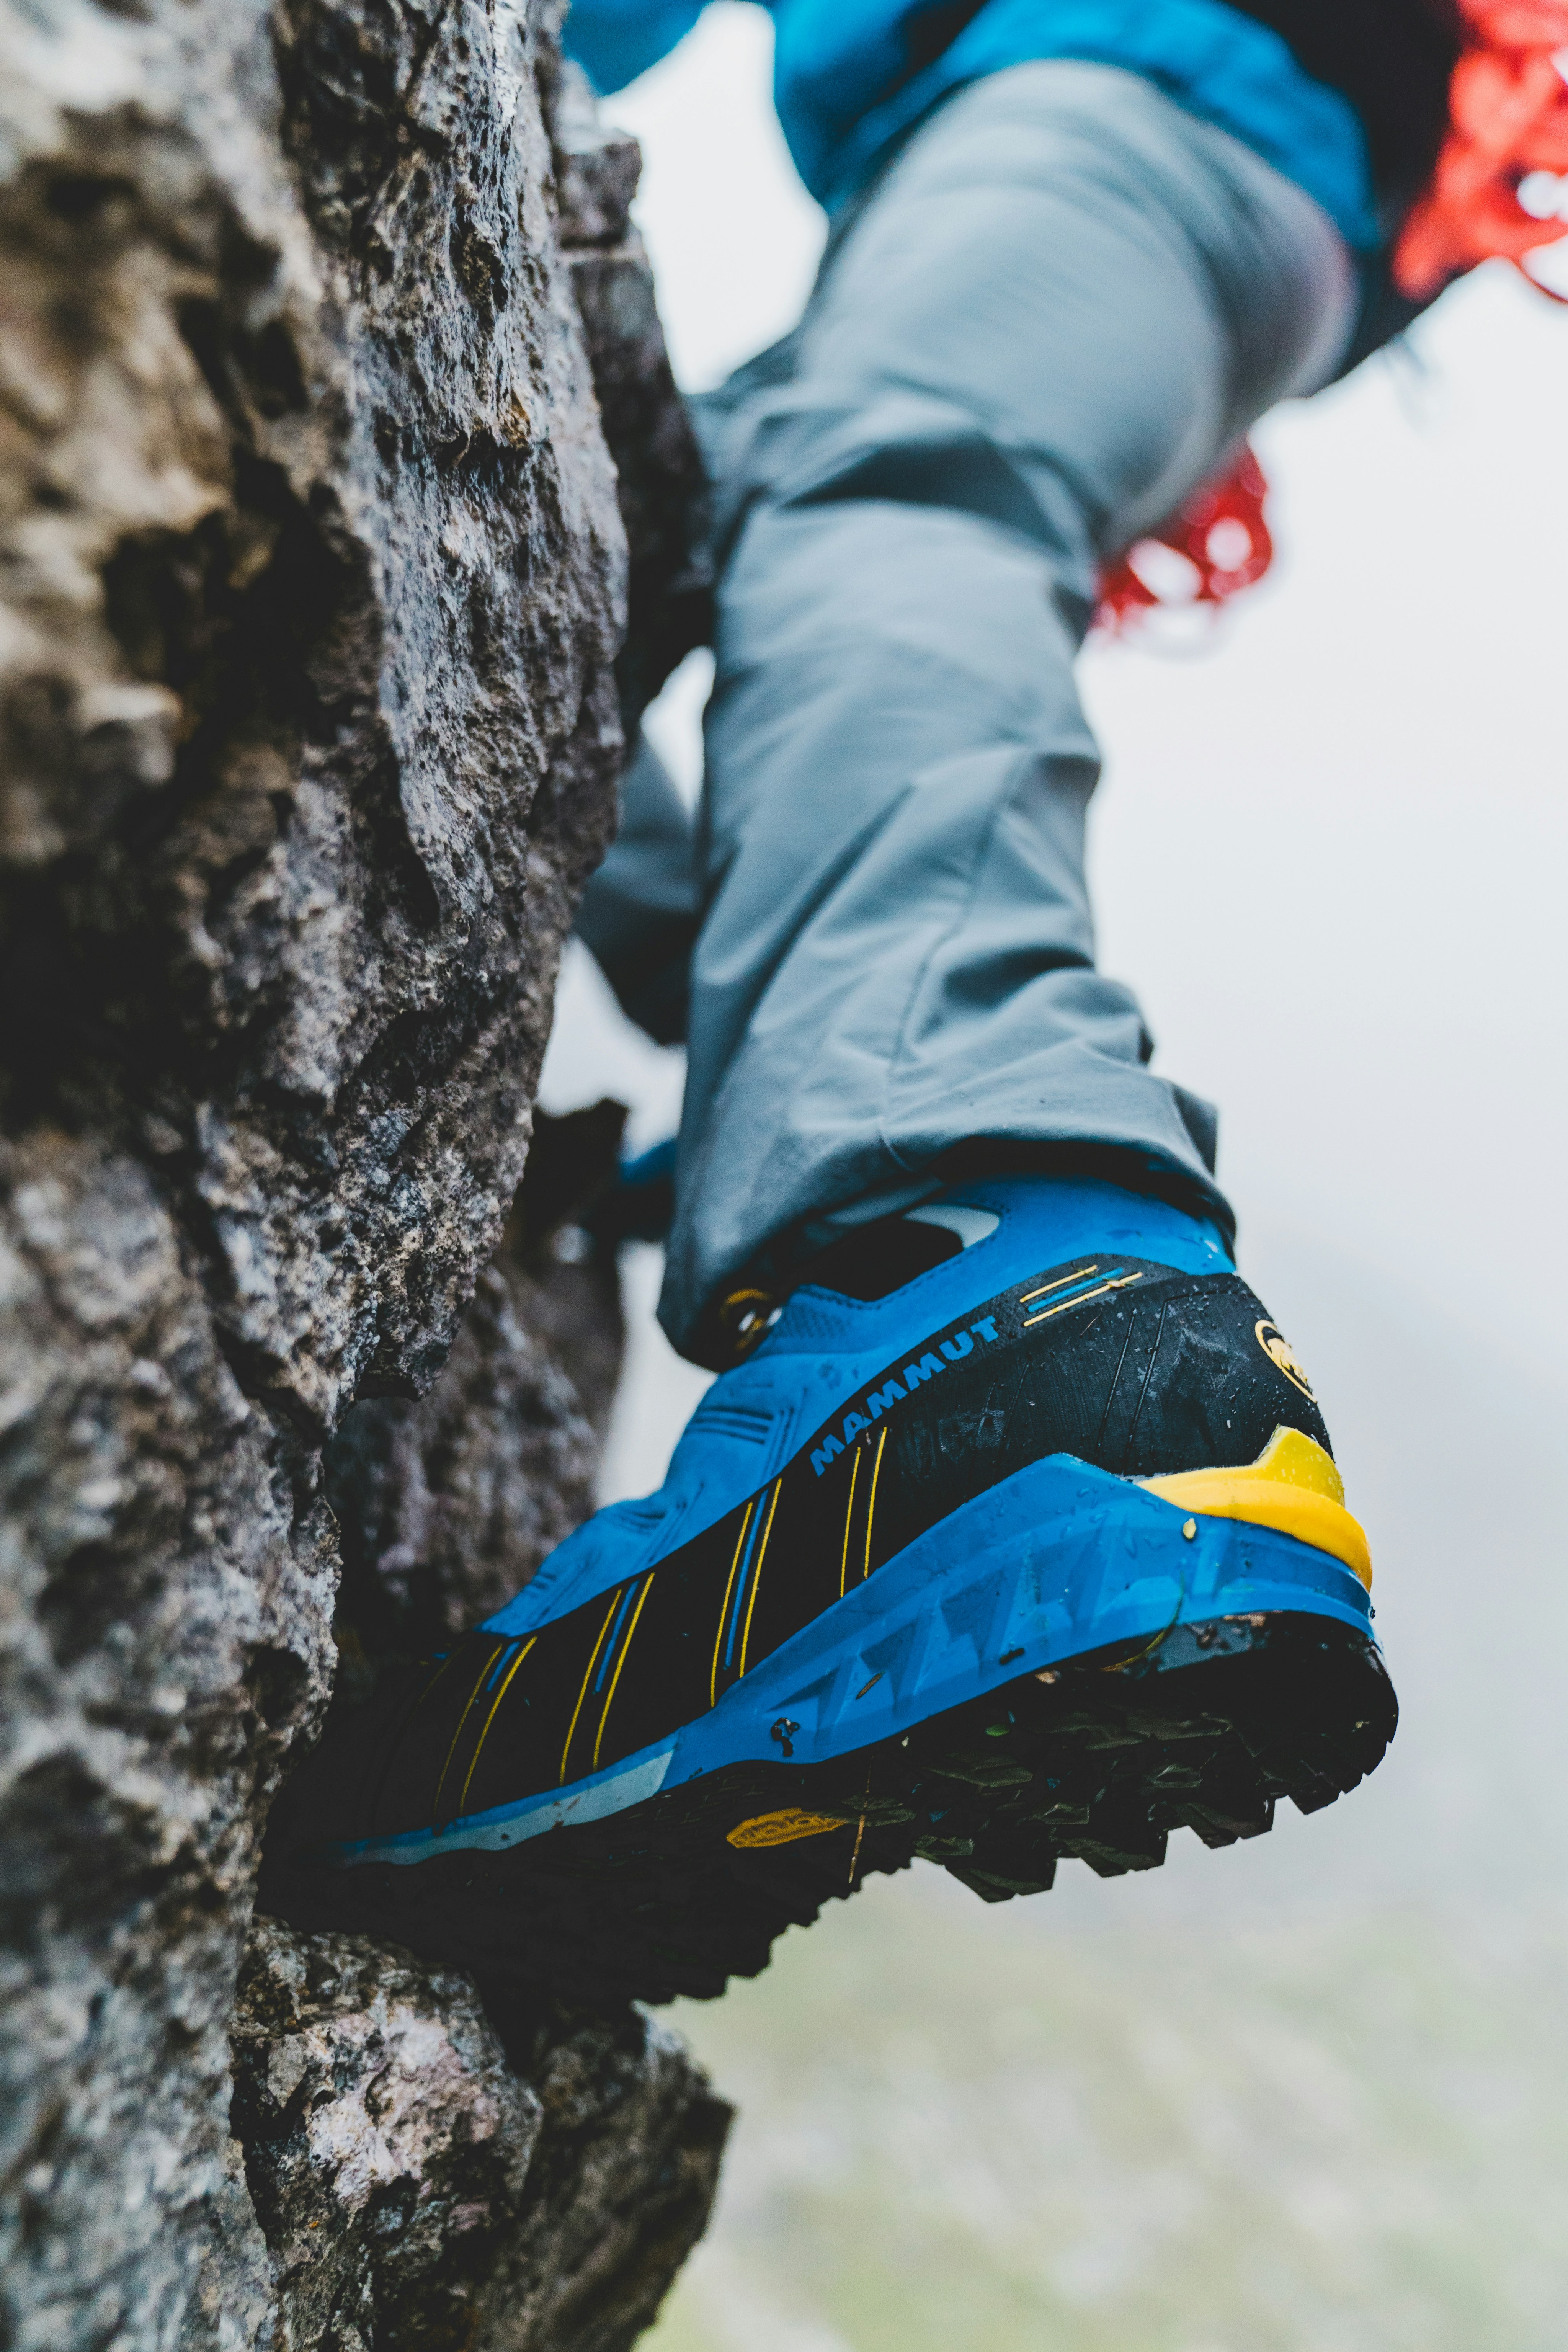 Alpinen Schuh an einem Felsen.